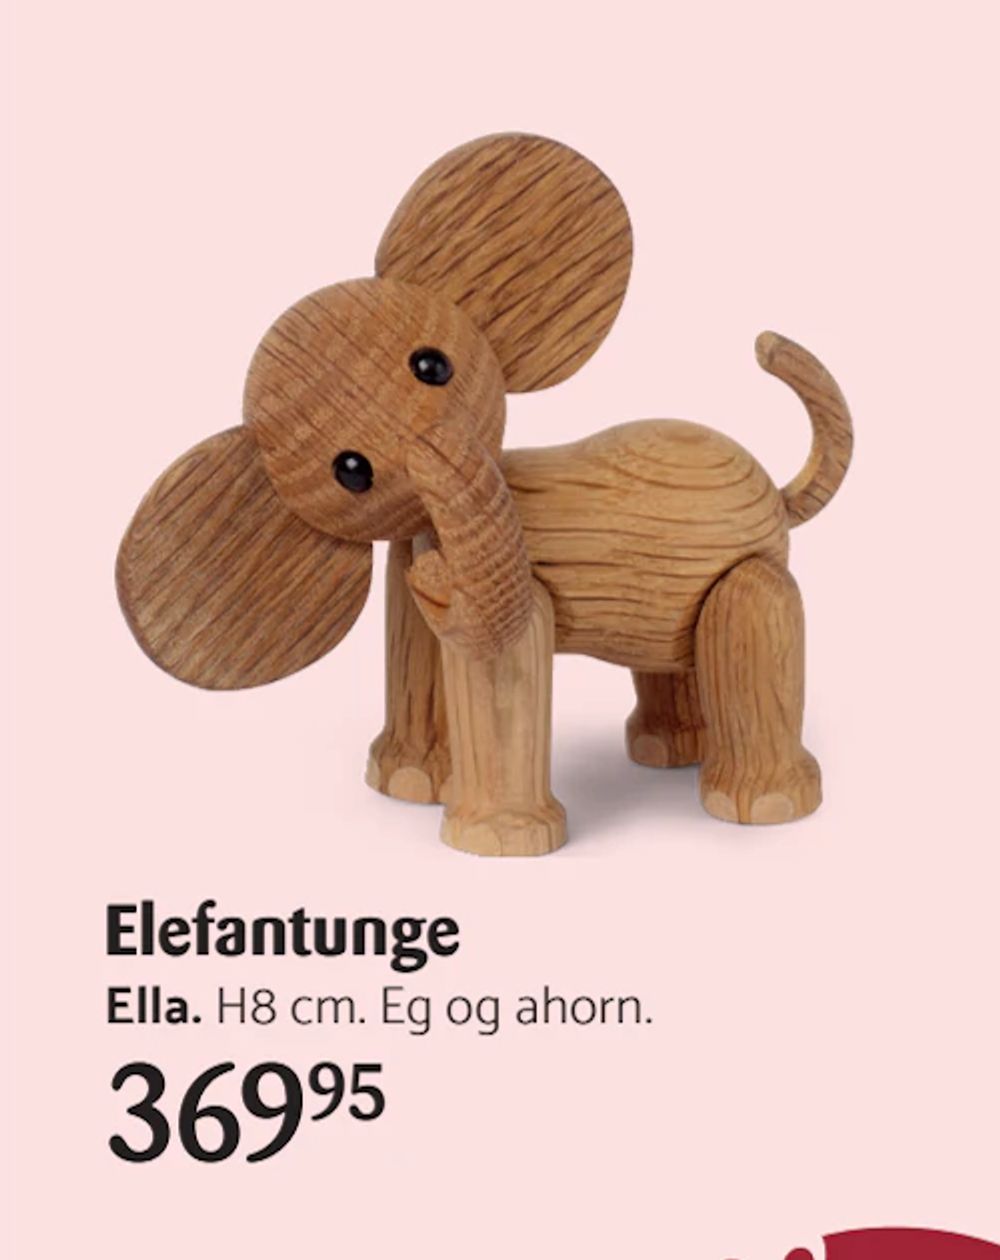 Tilbud på Elefantunge fra Kop & Kande til 369,95 kr.